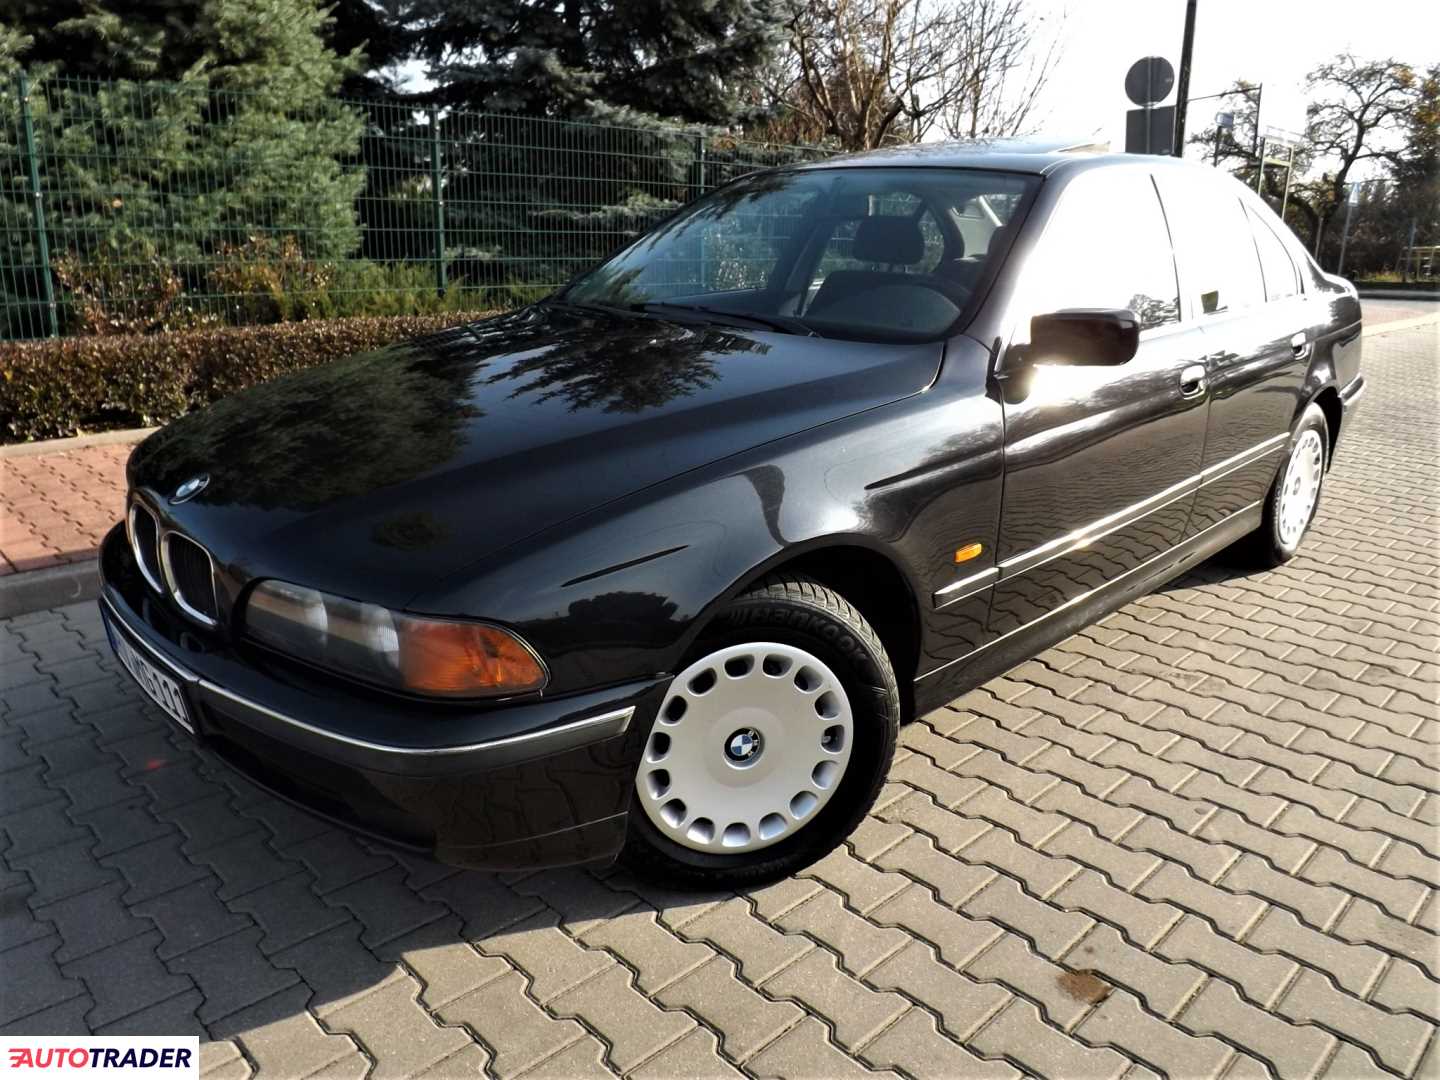 BMW 520 2.0 benzyna 150 KM 2000r. (Żyrardów) Autotrader.pl